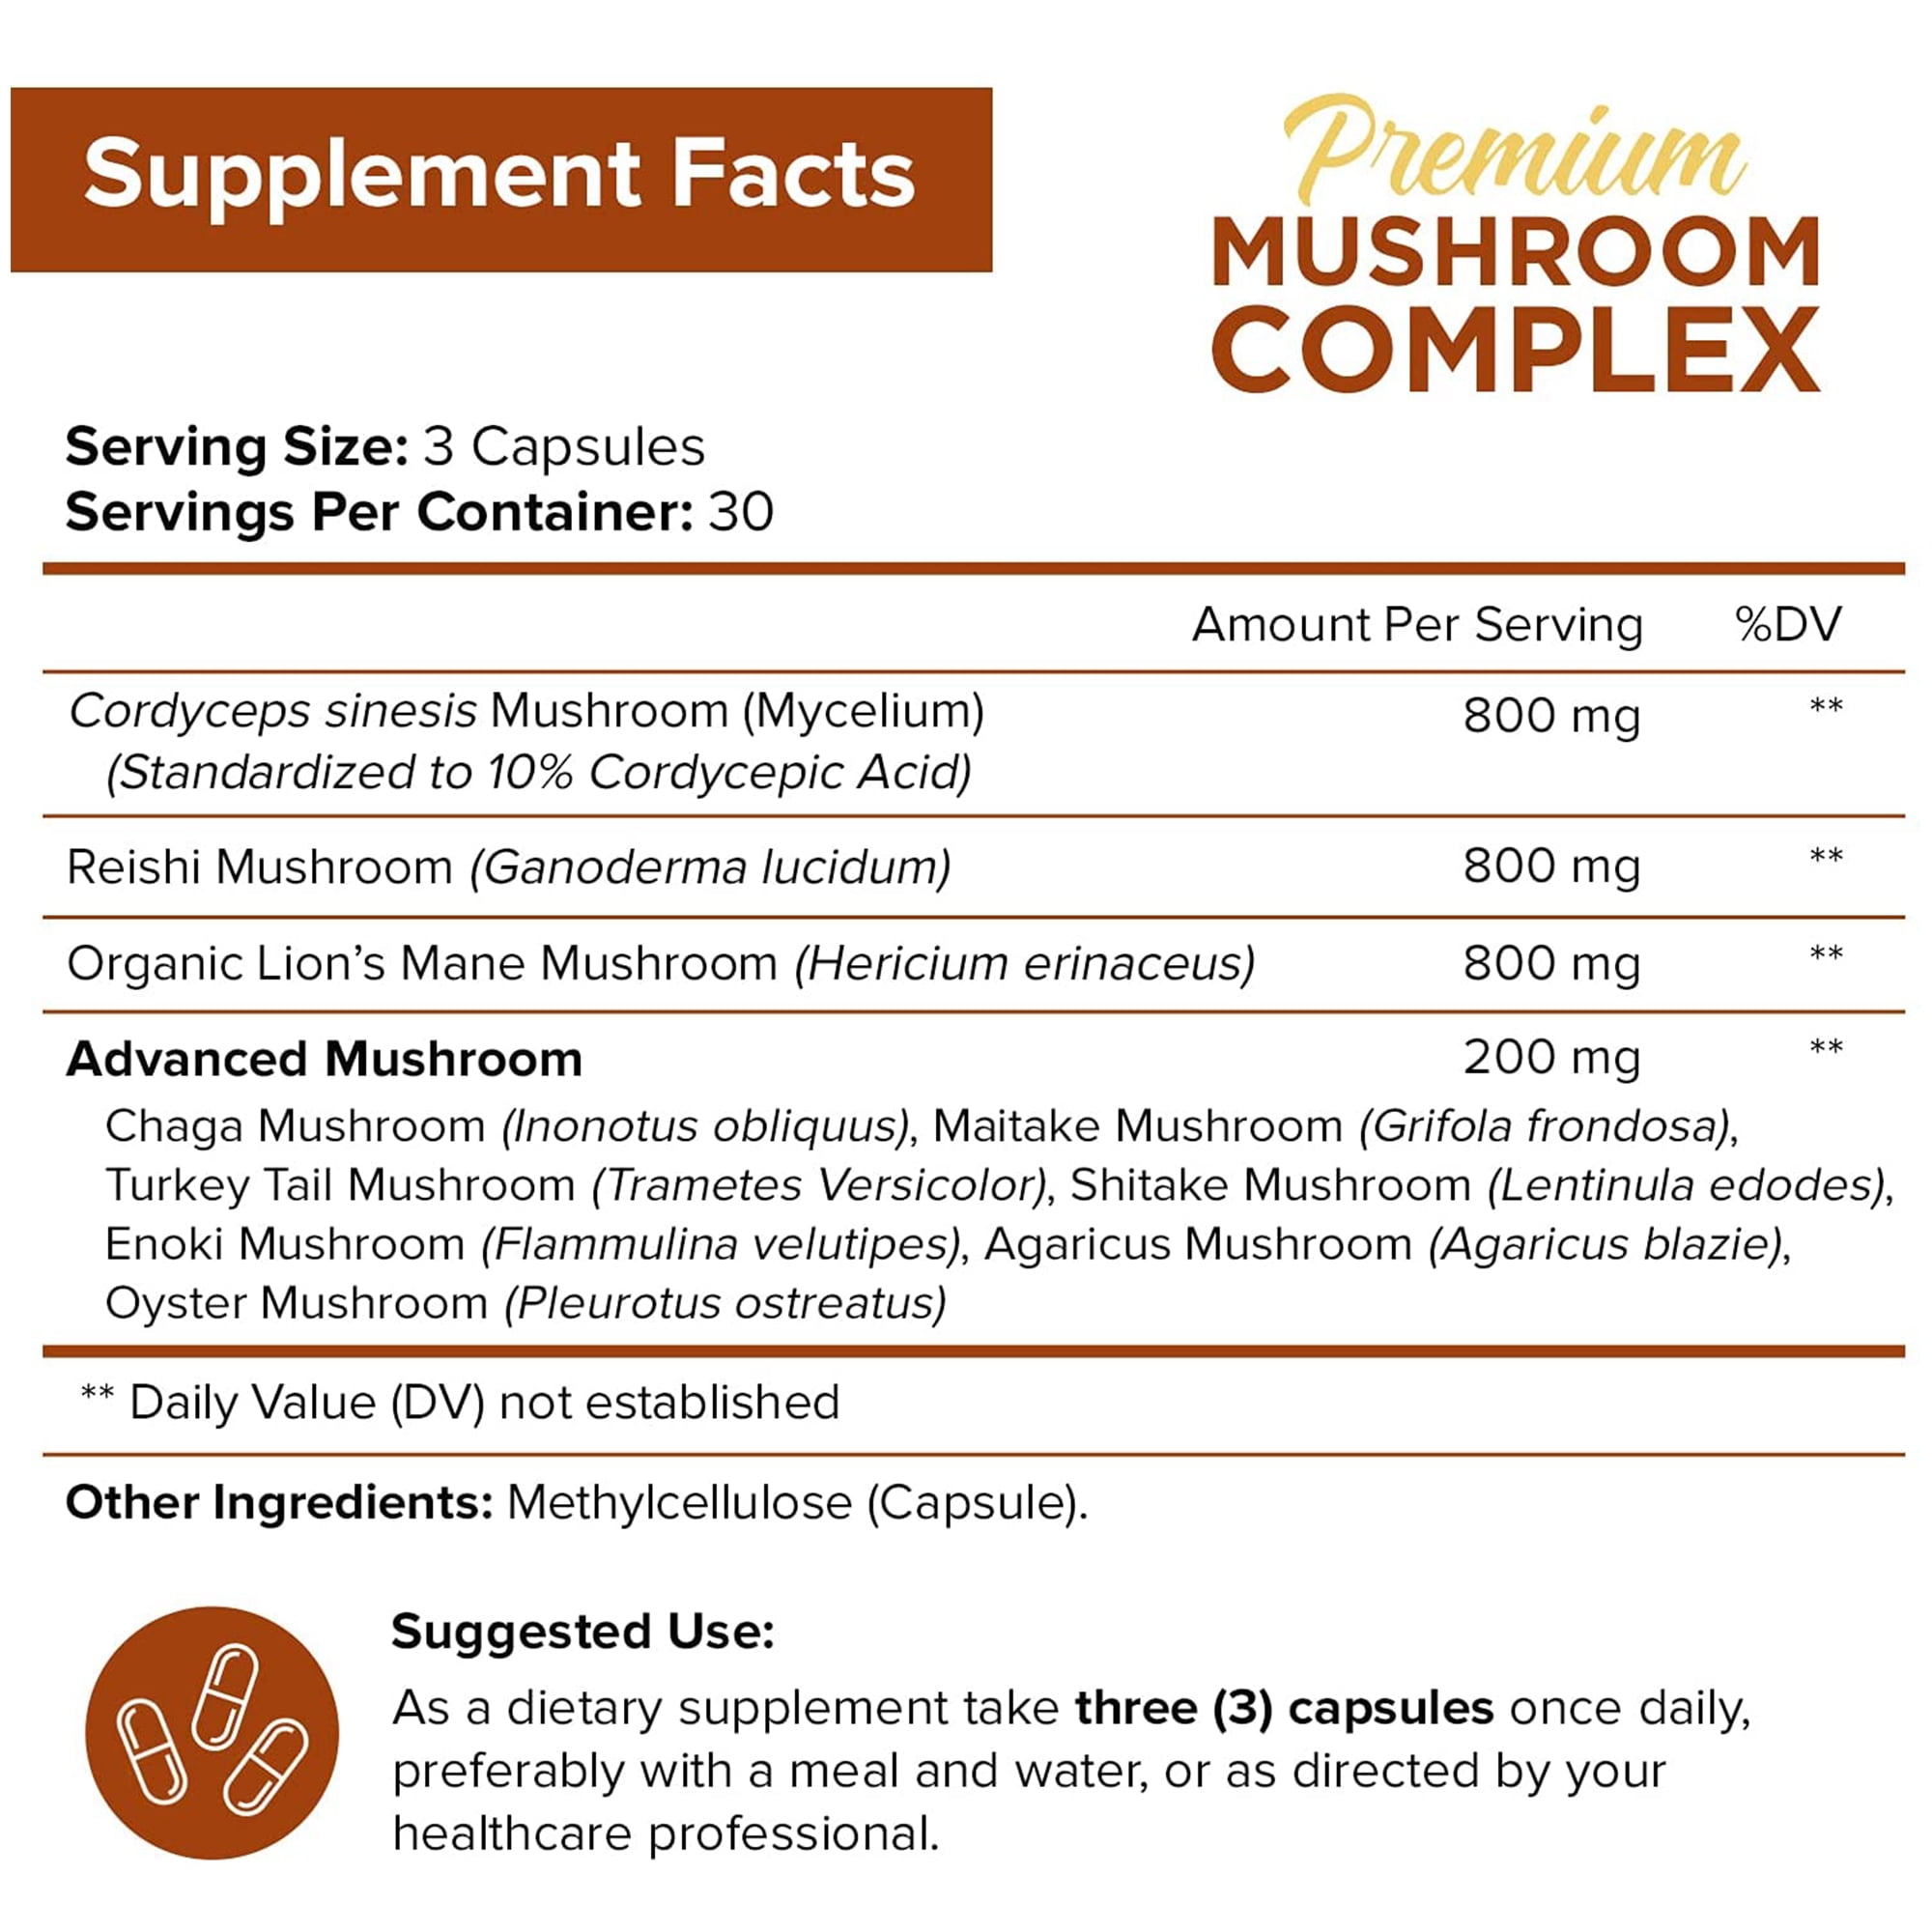 10 Mushroom Complex Supplement 2600 mg - 90 Capsules